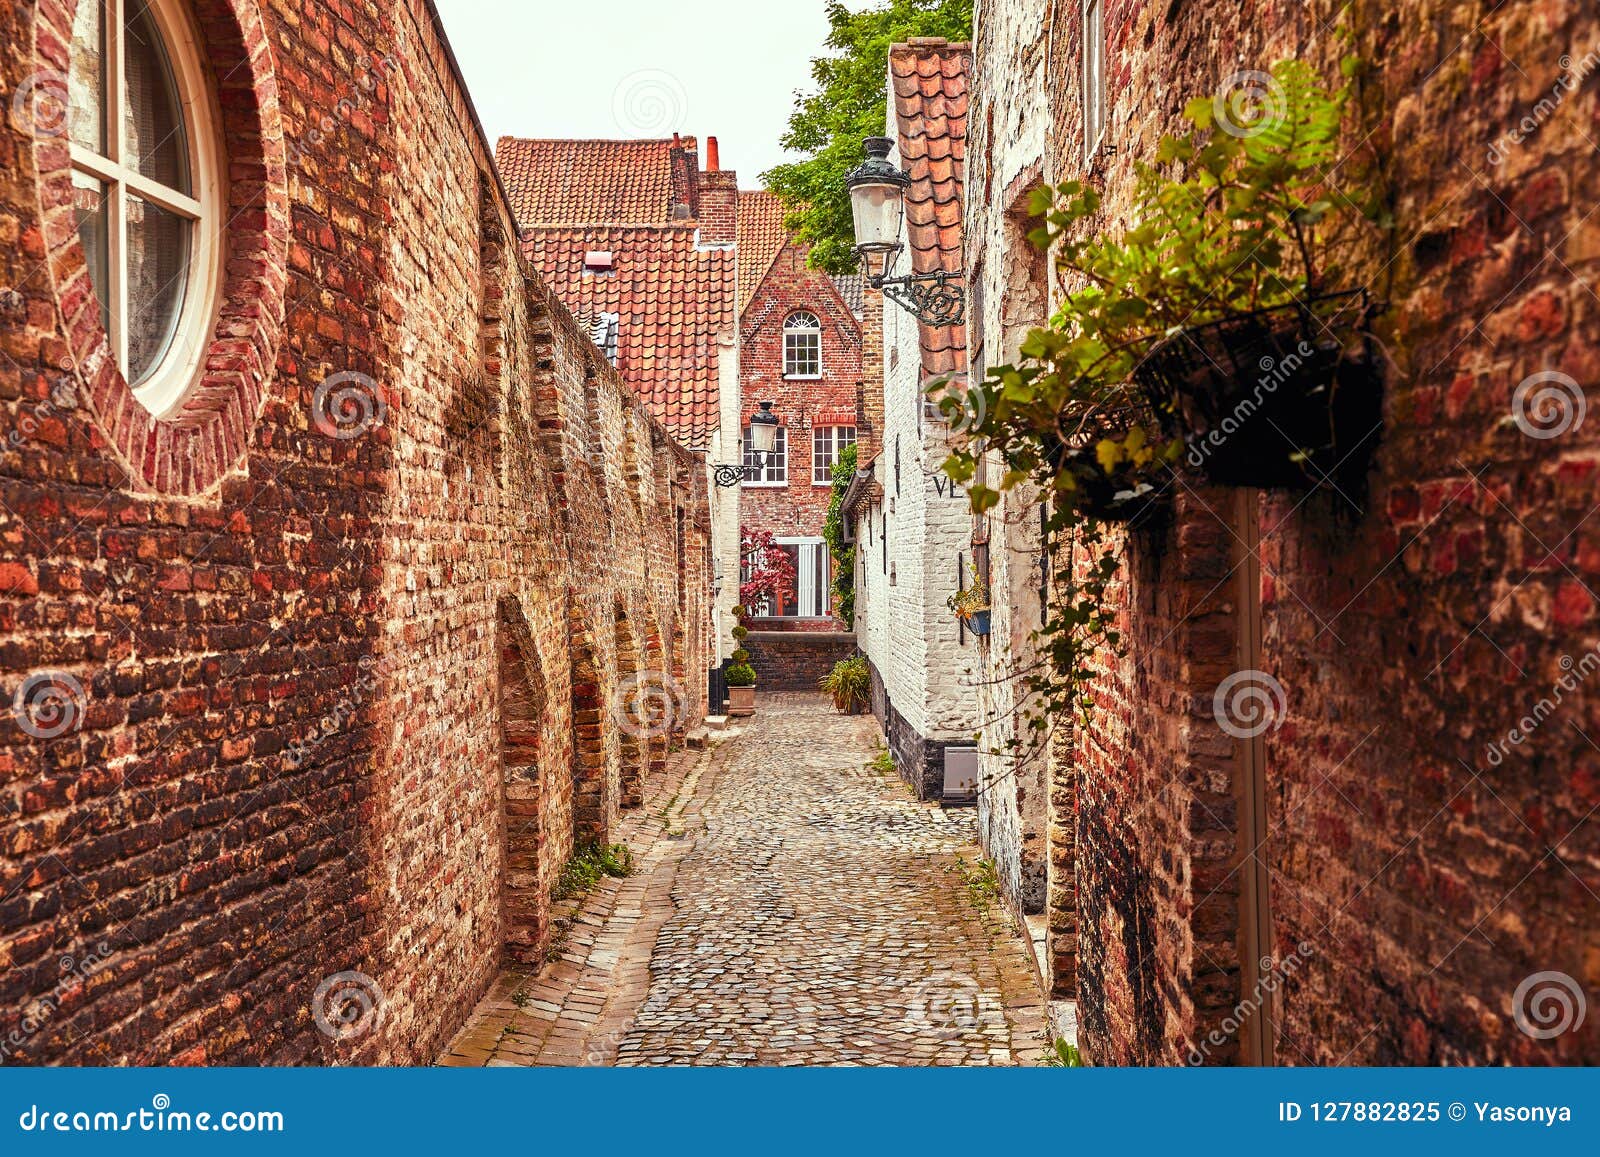 bruges belgium. antique brick walls along narrow